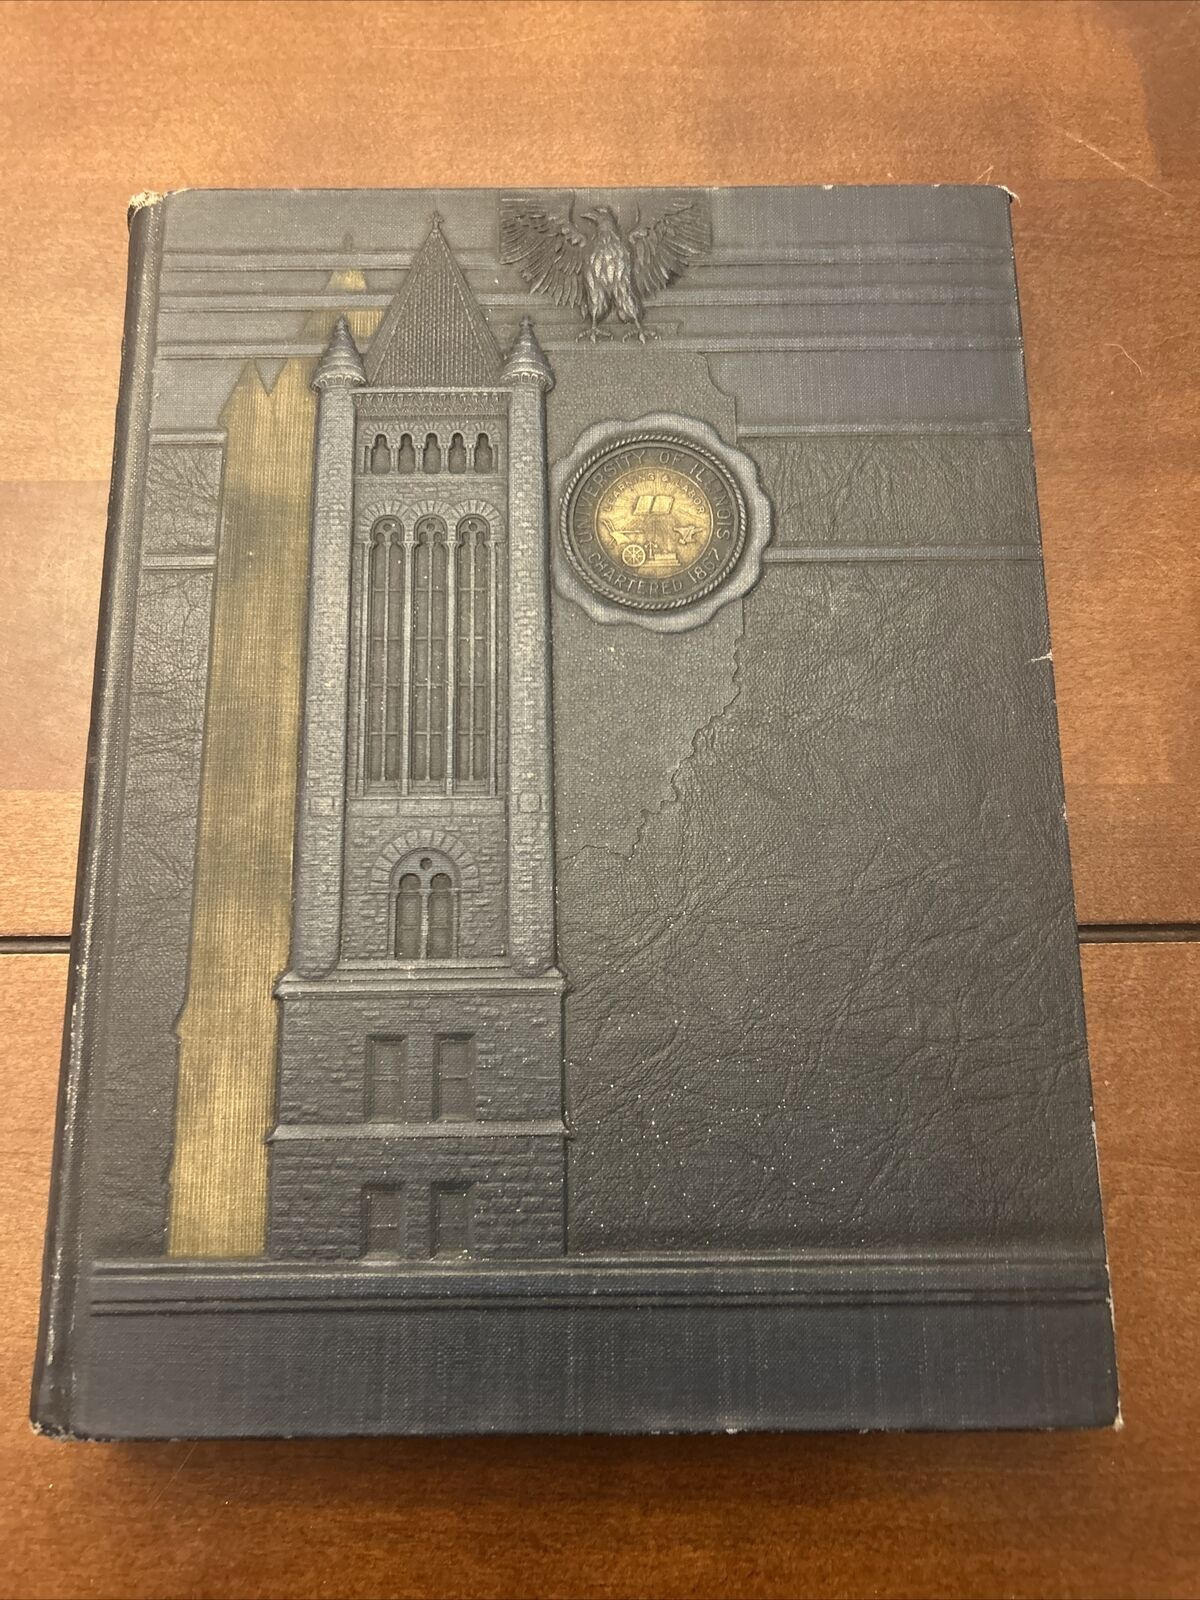 University of Illinois Yearbook, Illio, 1933, Champaign, Illinois, IL